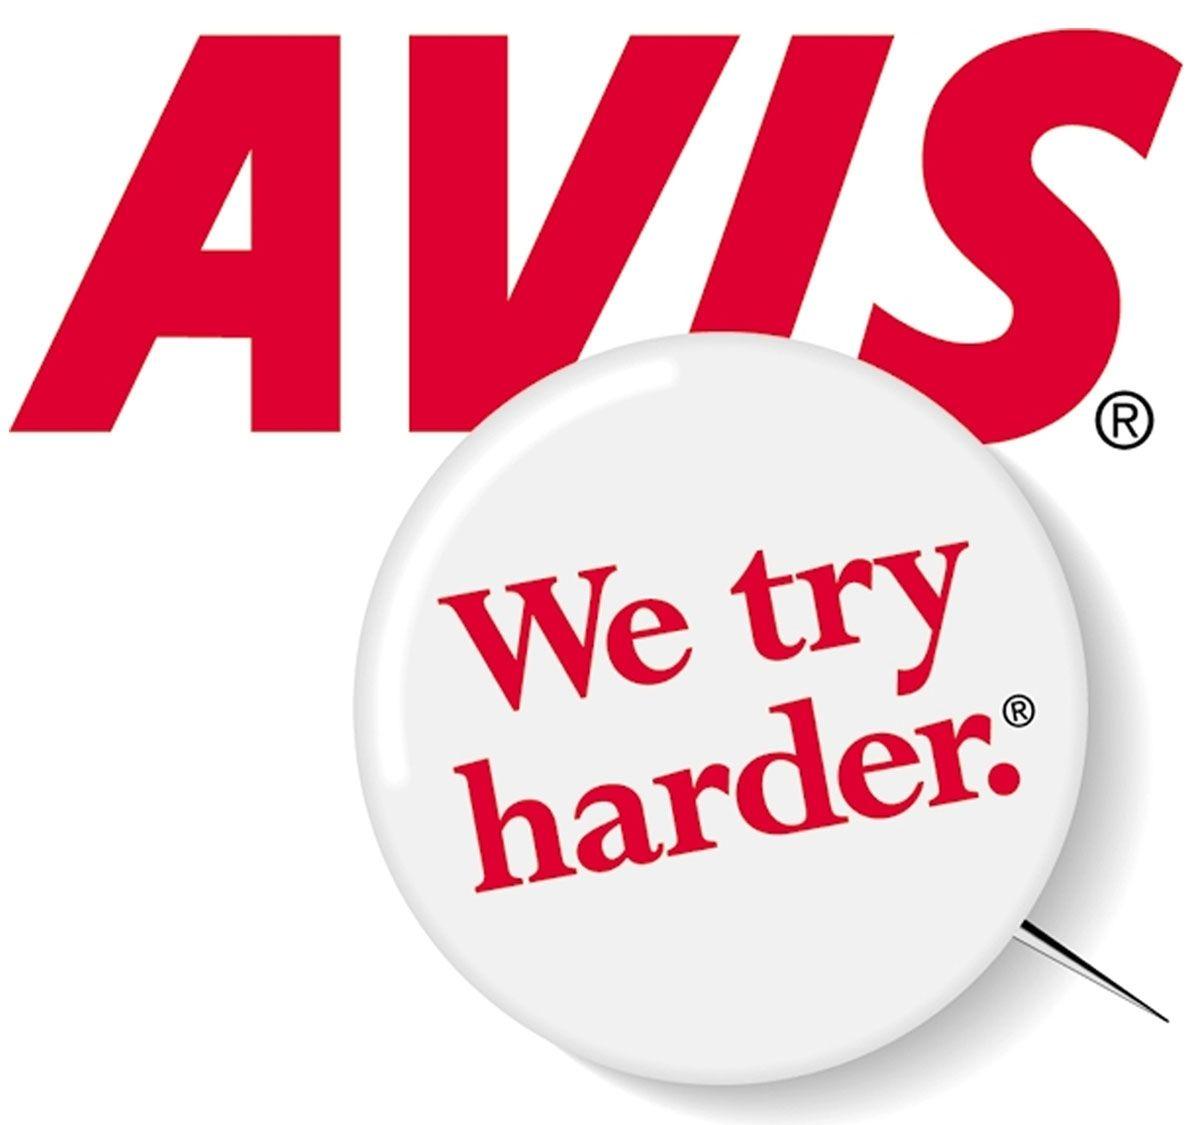 Avis Rent a Car Logo - AVIS St Kitts. We Try Harder